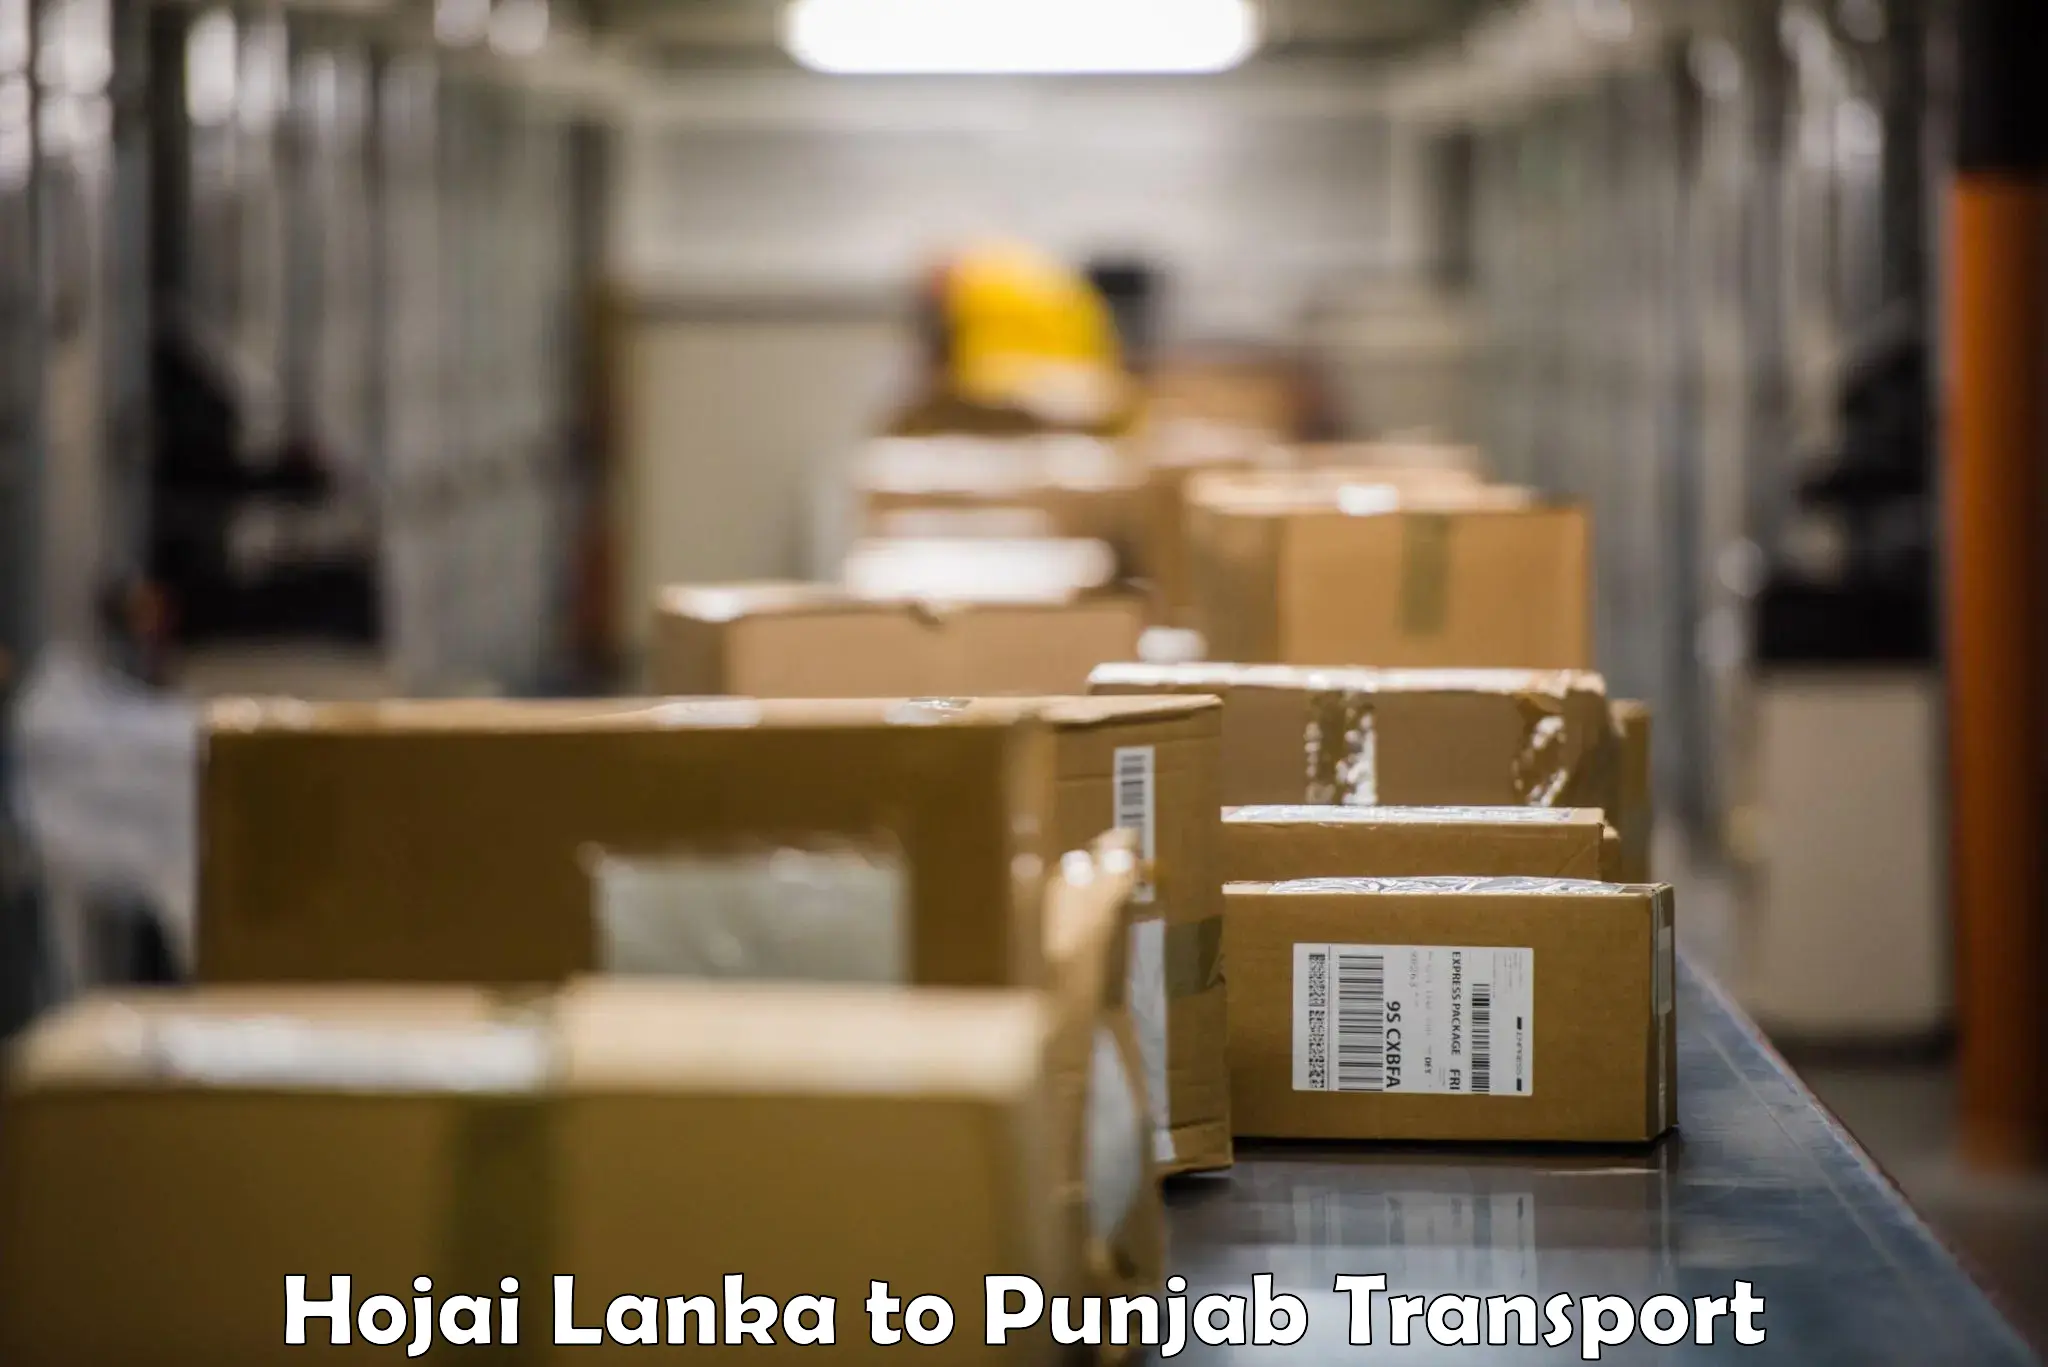 Vehicle transport services Hojai Lanka to Machhiwara